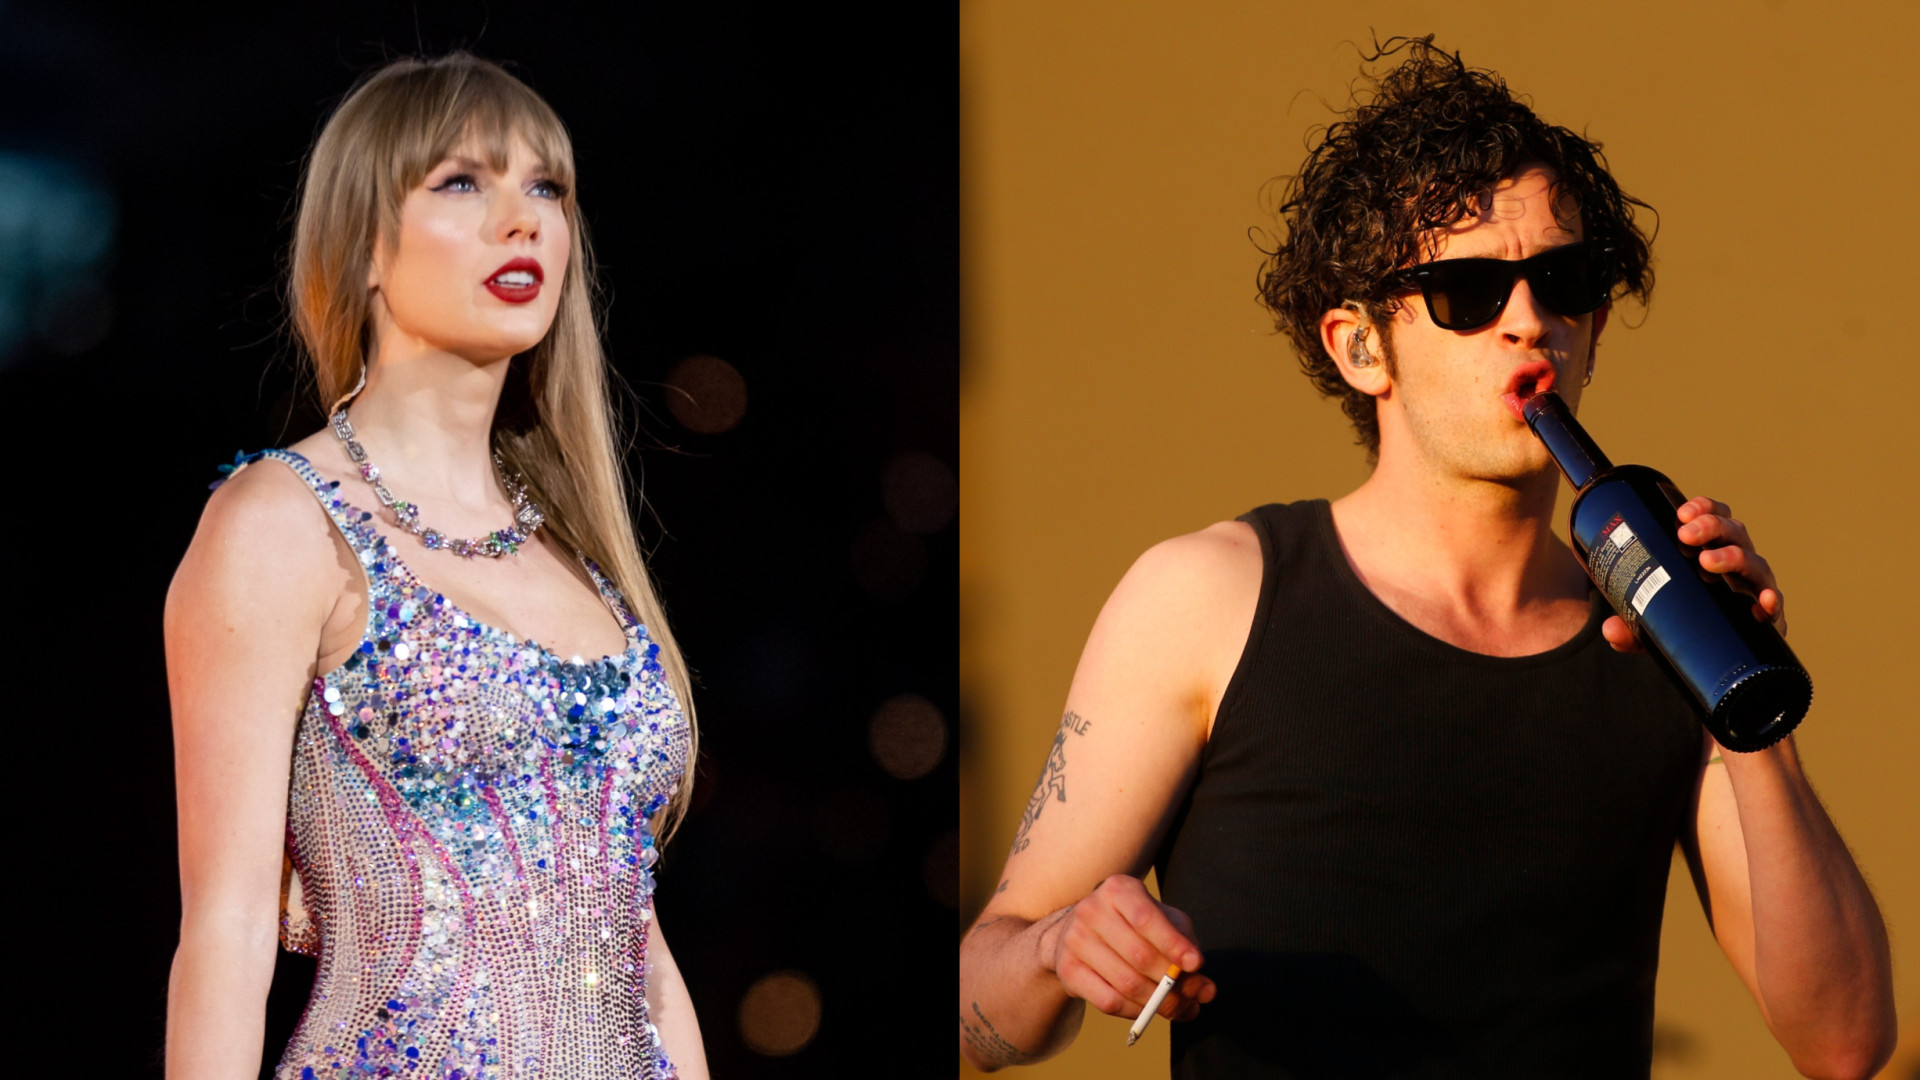 Semanas após separação, Taylor Swift começa namoro com cantor britânico